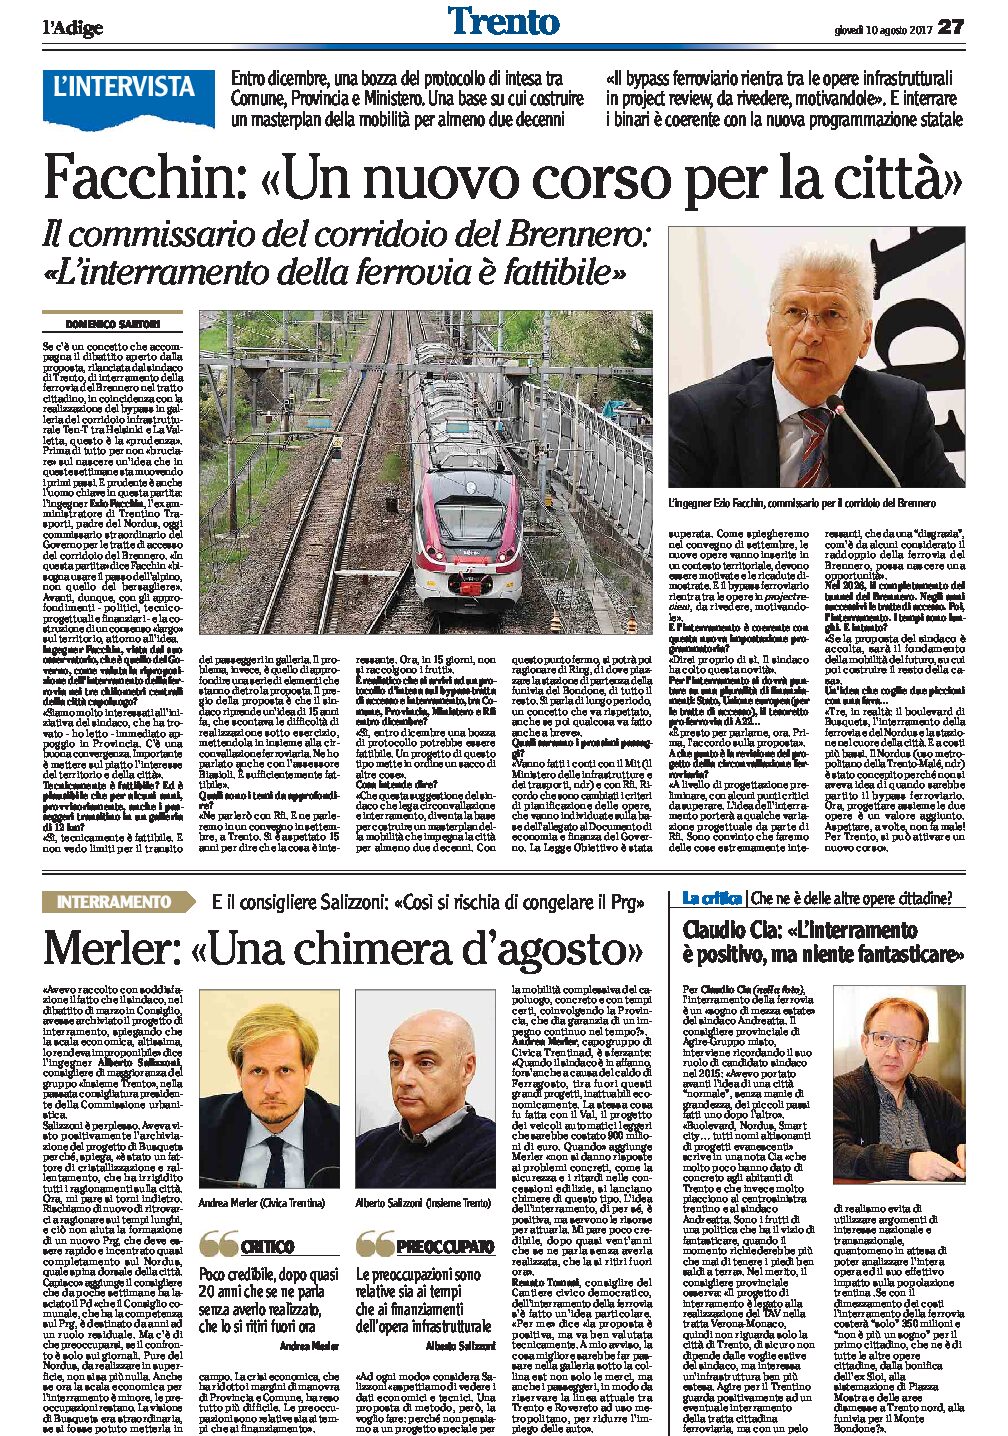 Trento, interramento della ferrovia: Facchin “fattibile, un nuovo corso per la città”